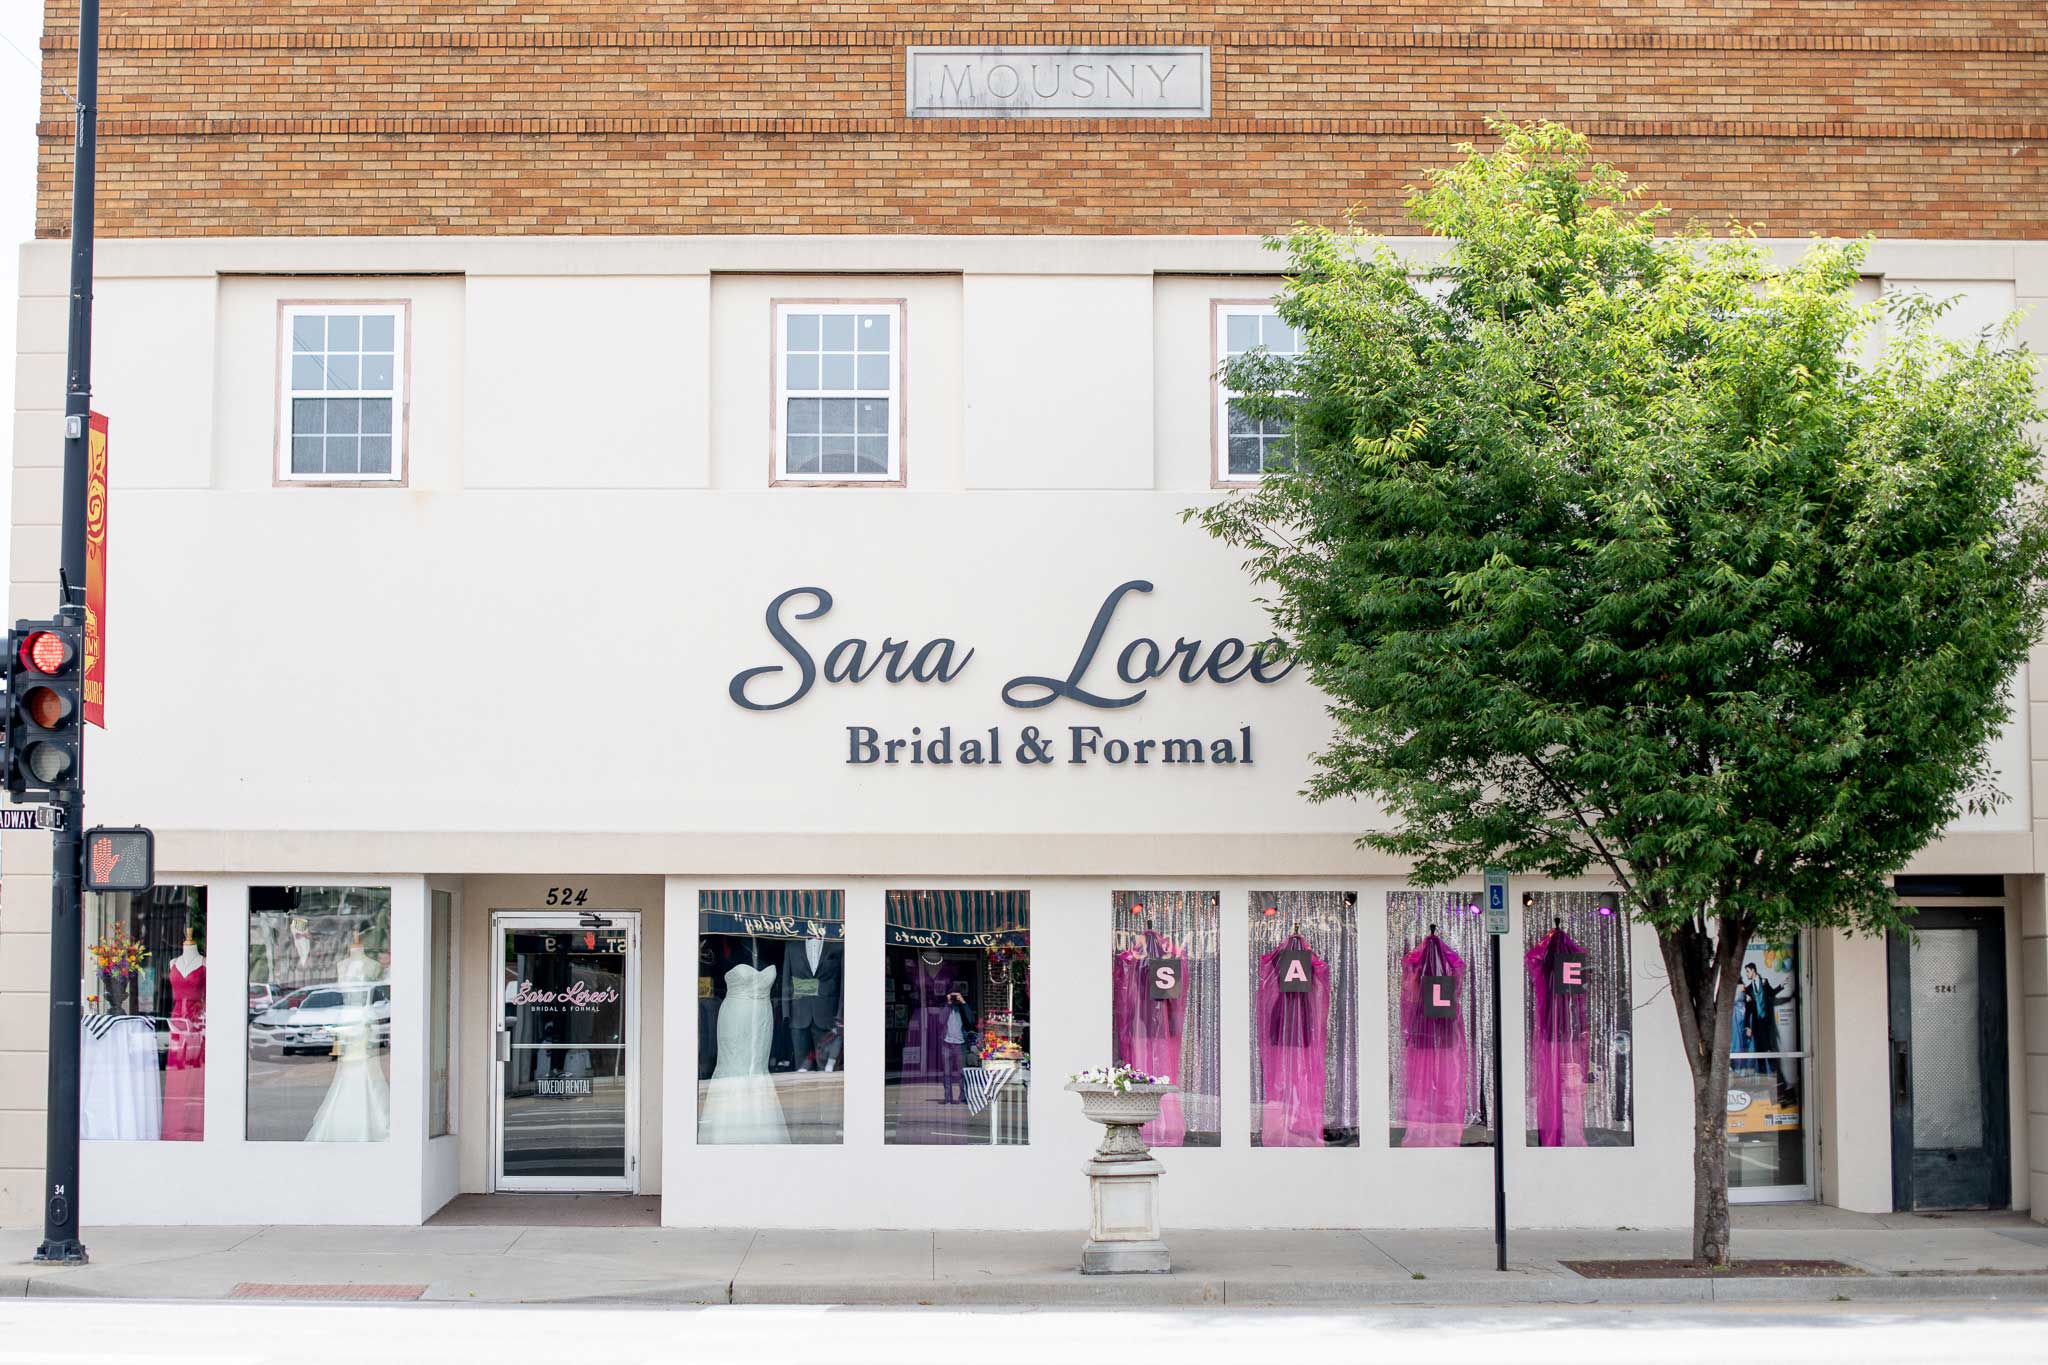 Sara Loree's Bridal and Formal Store Front